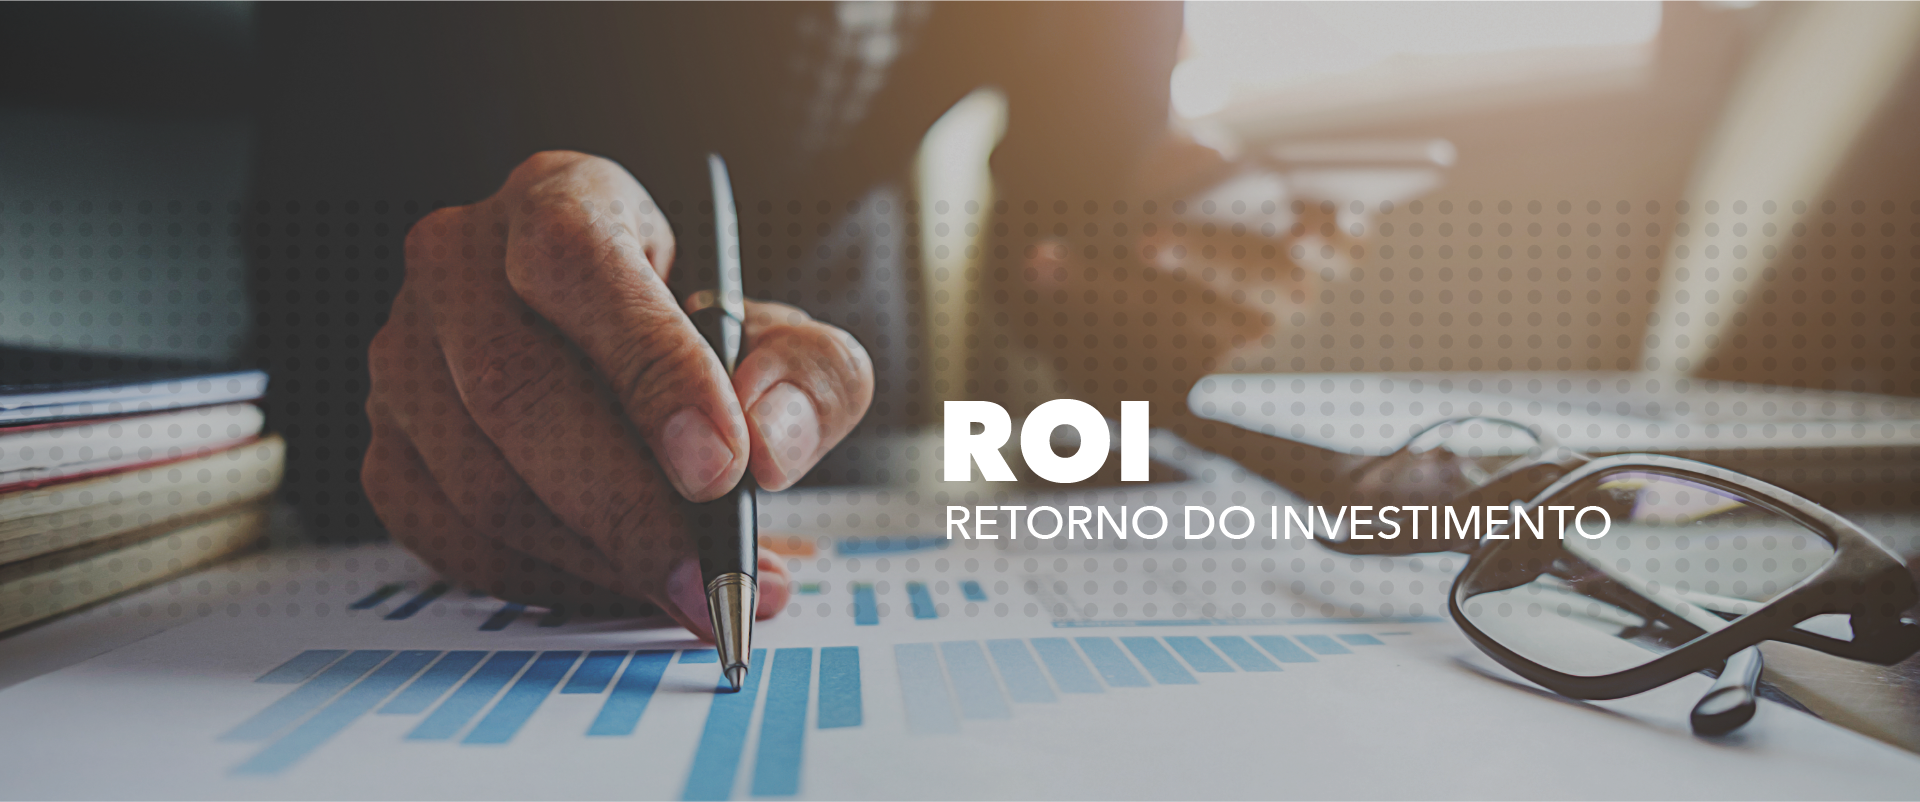 calculo-retorno-investimento.png